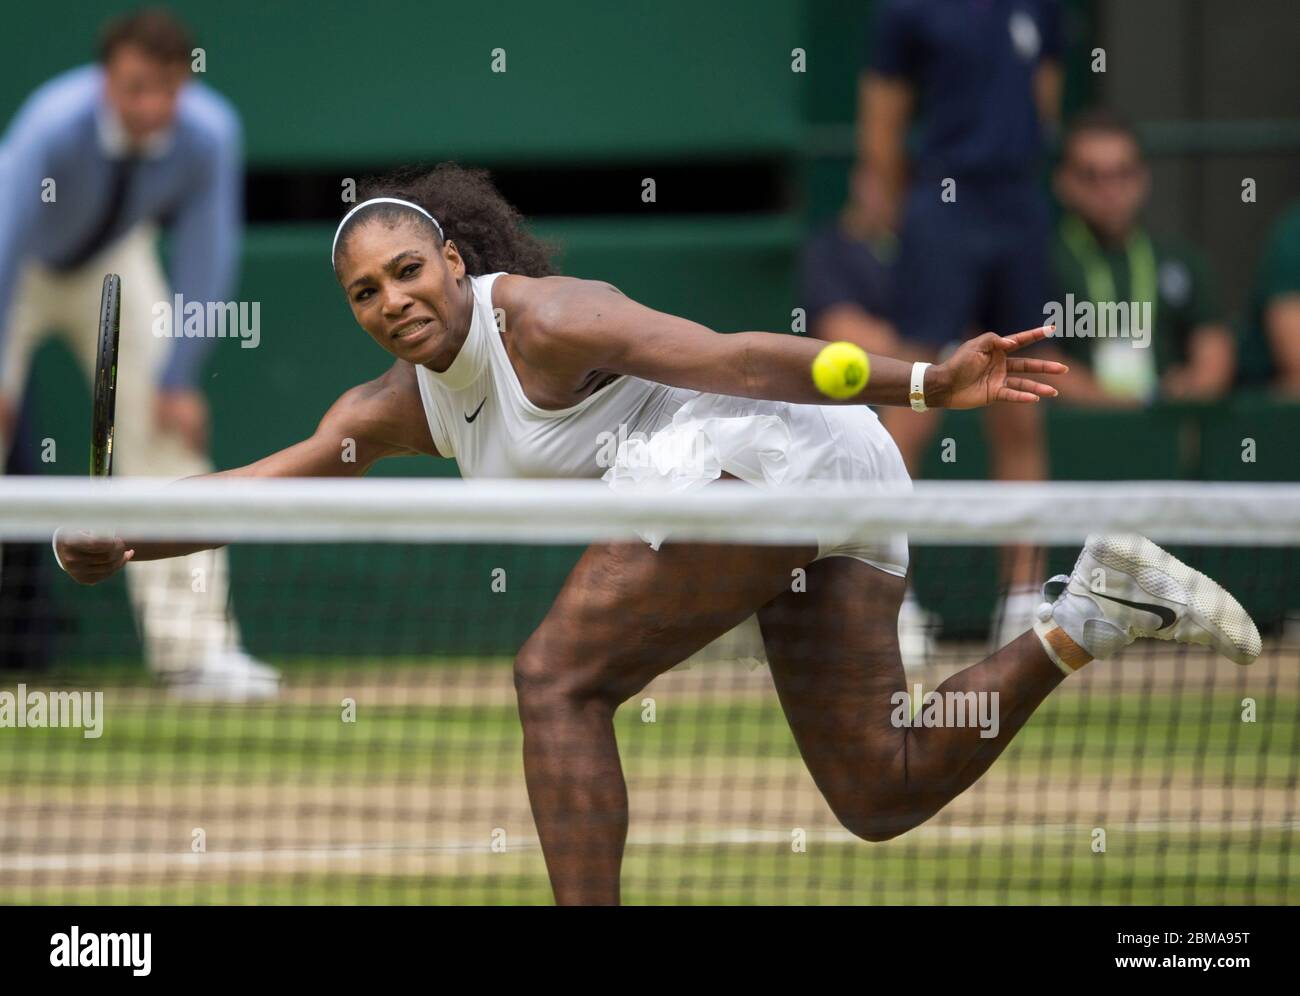 9 de julio de 2016, Center Court, Wimbledon, Londres: Serena Williams (EE.UU.) en acción contra Angelique Kerber, (GER) durante la final de las mujeres solteras. Foto de stock